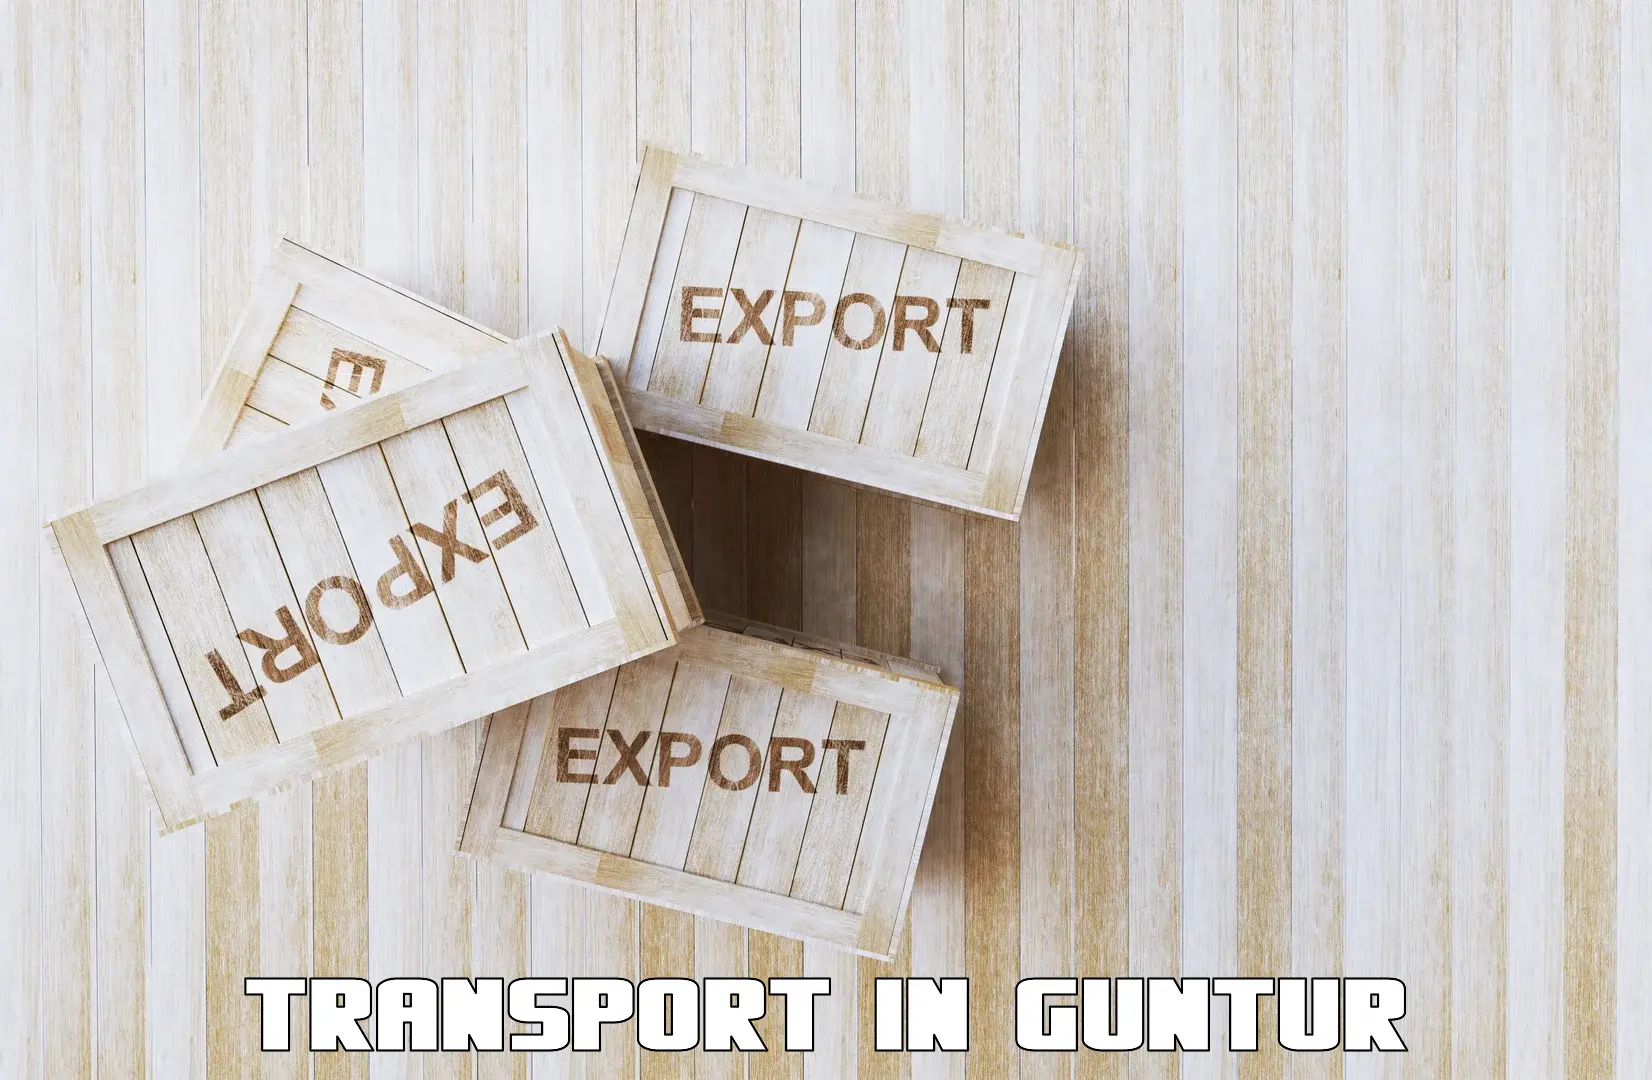 Transportation services in Guntur